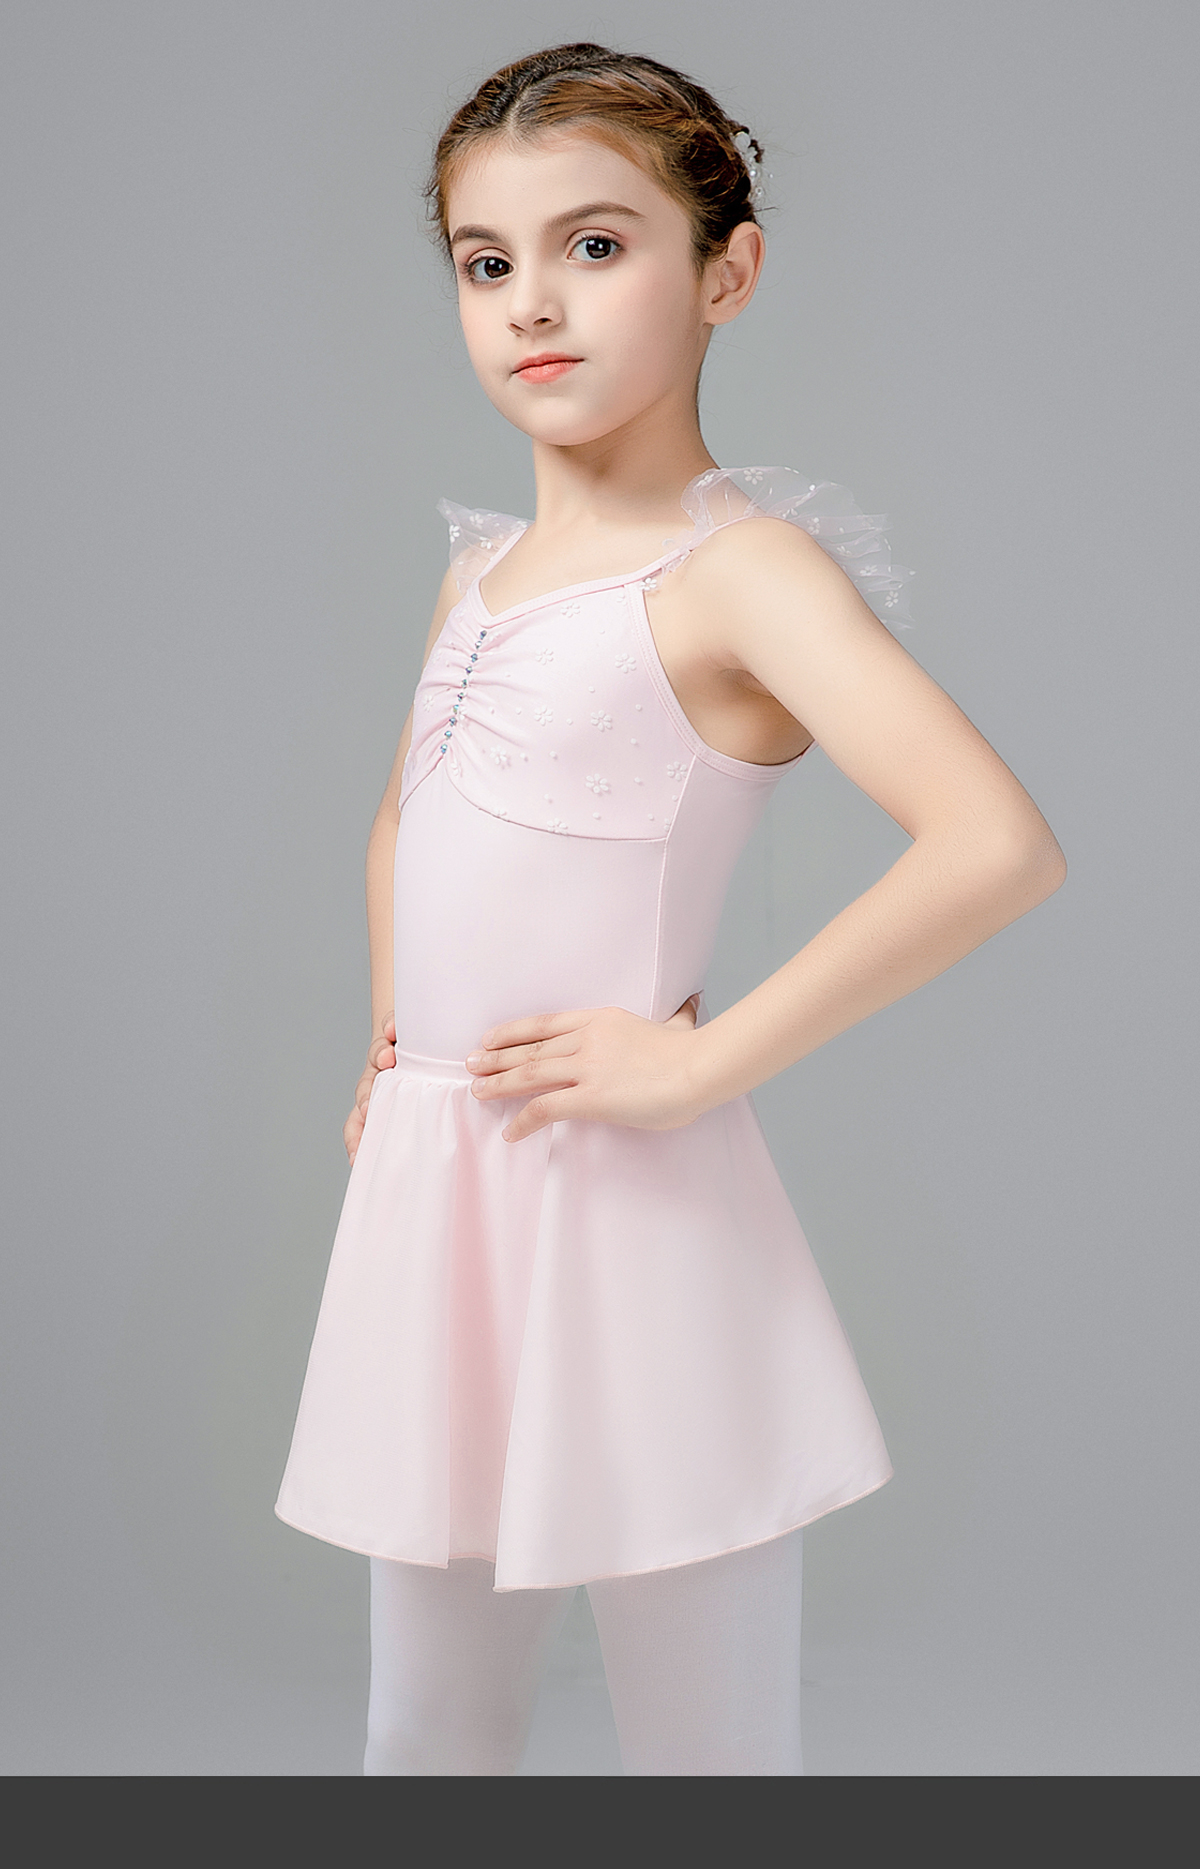 吊带练功服女童夏季芭蕾舞服装0302225